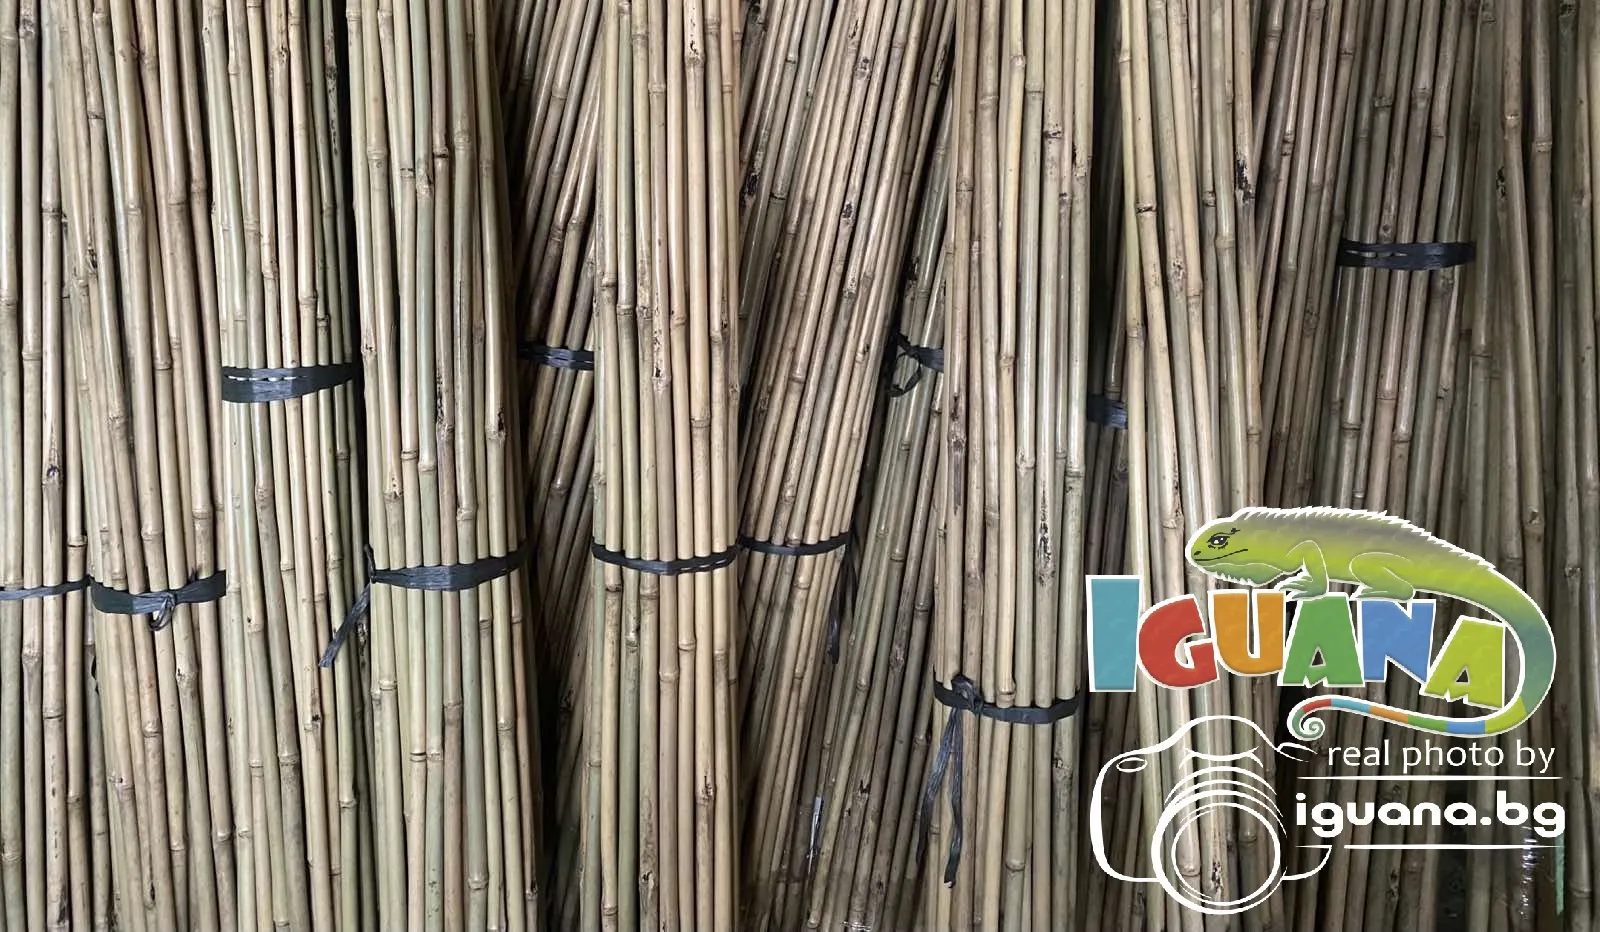 ПРОМО комплект 50 броя колчета от бамбук 210см Колчета за домати от естествен бамбук 210см кол, бамбукови пръчки 2,10м 10